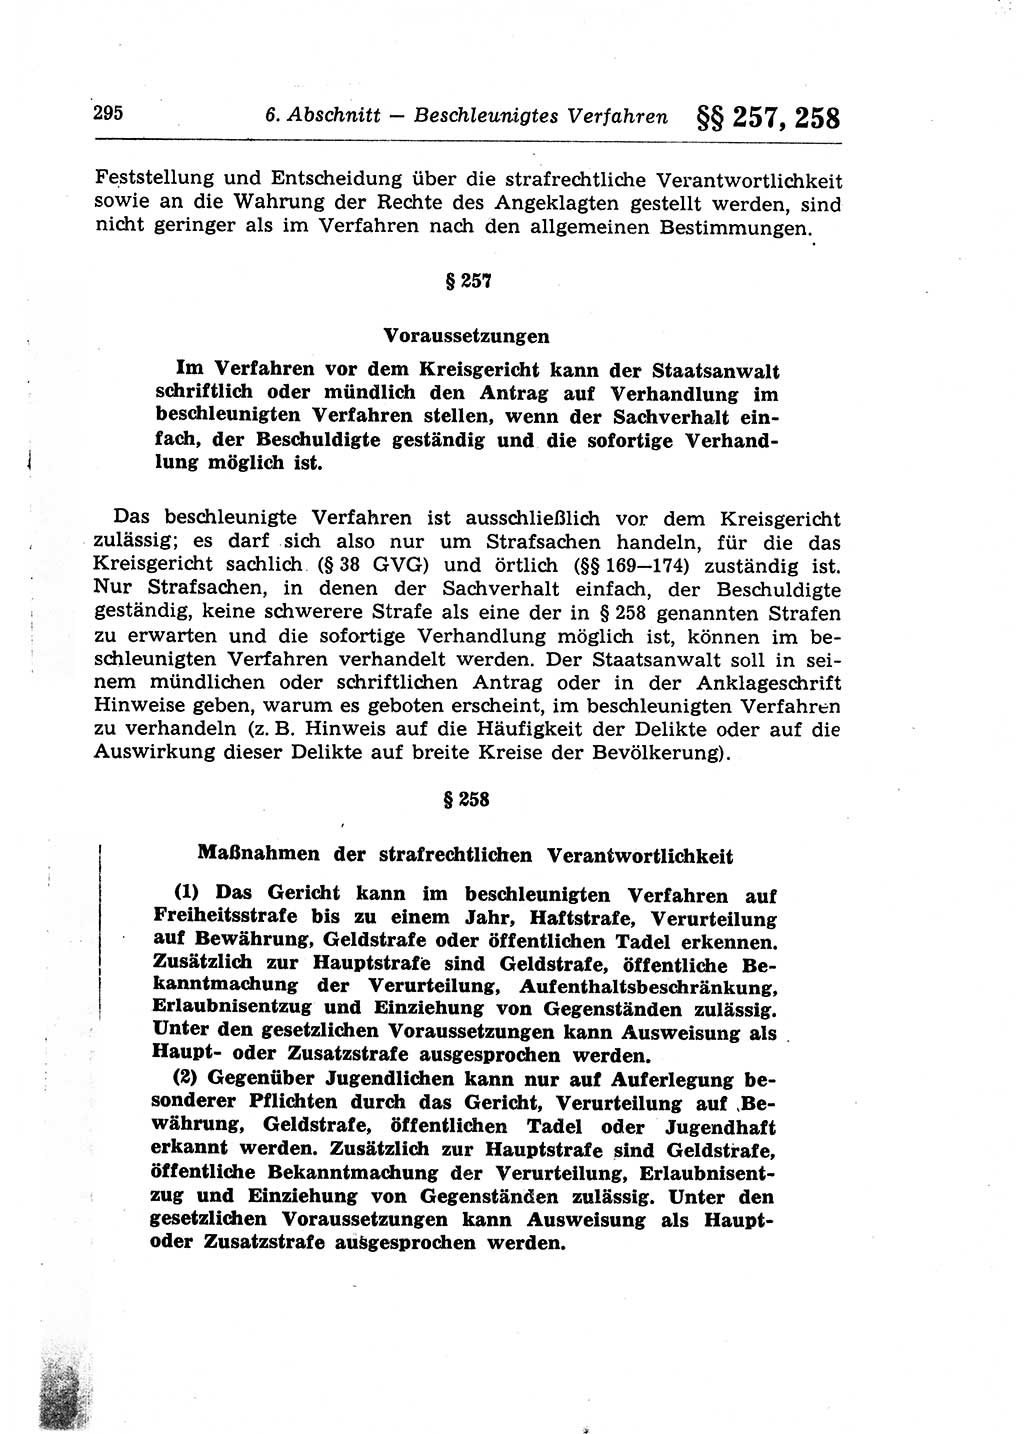 Strafprozeßrecht der DDR (Deutsche Demokratische Republik), Lehrkommentar zur Strafprozeßordnung (StPO) 1968, Seite 295 (Strafprozeßr. DDR Lehrkomm. StPO 19688, S. 295)